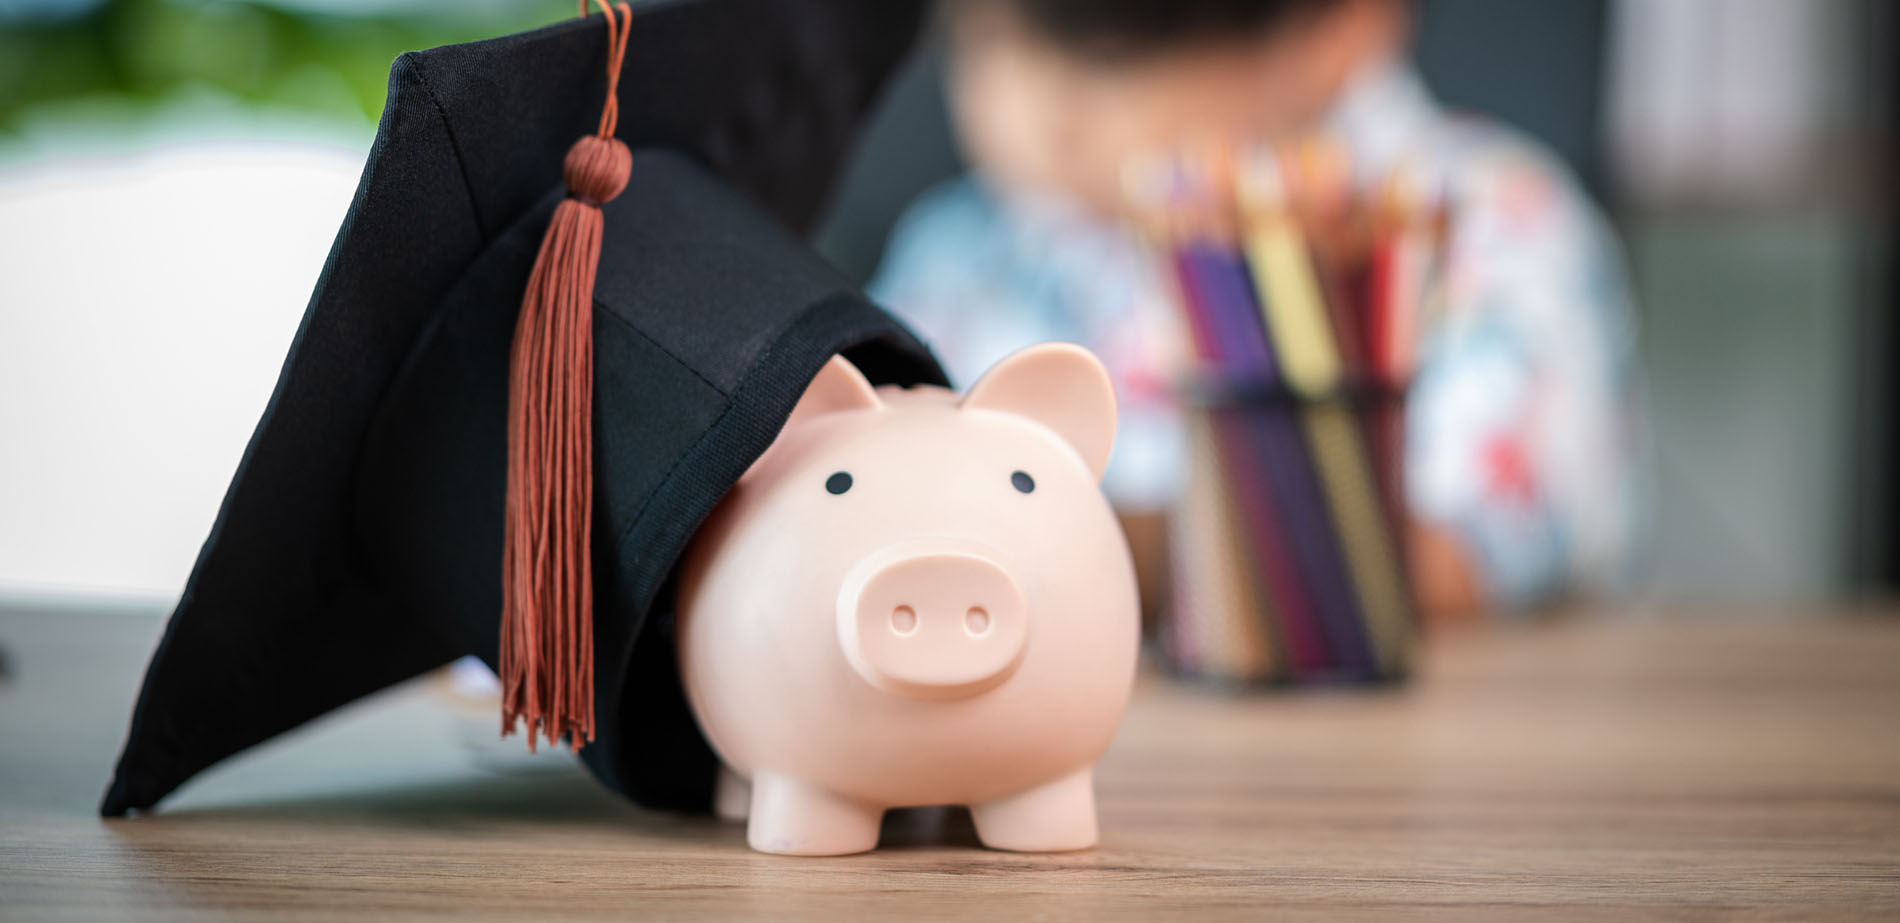 A piggy bank wearing a graduation cap